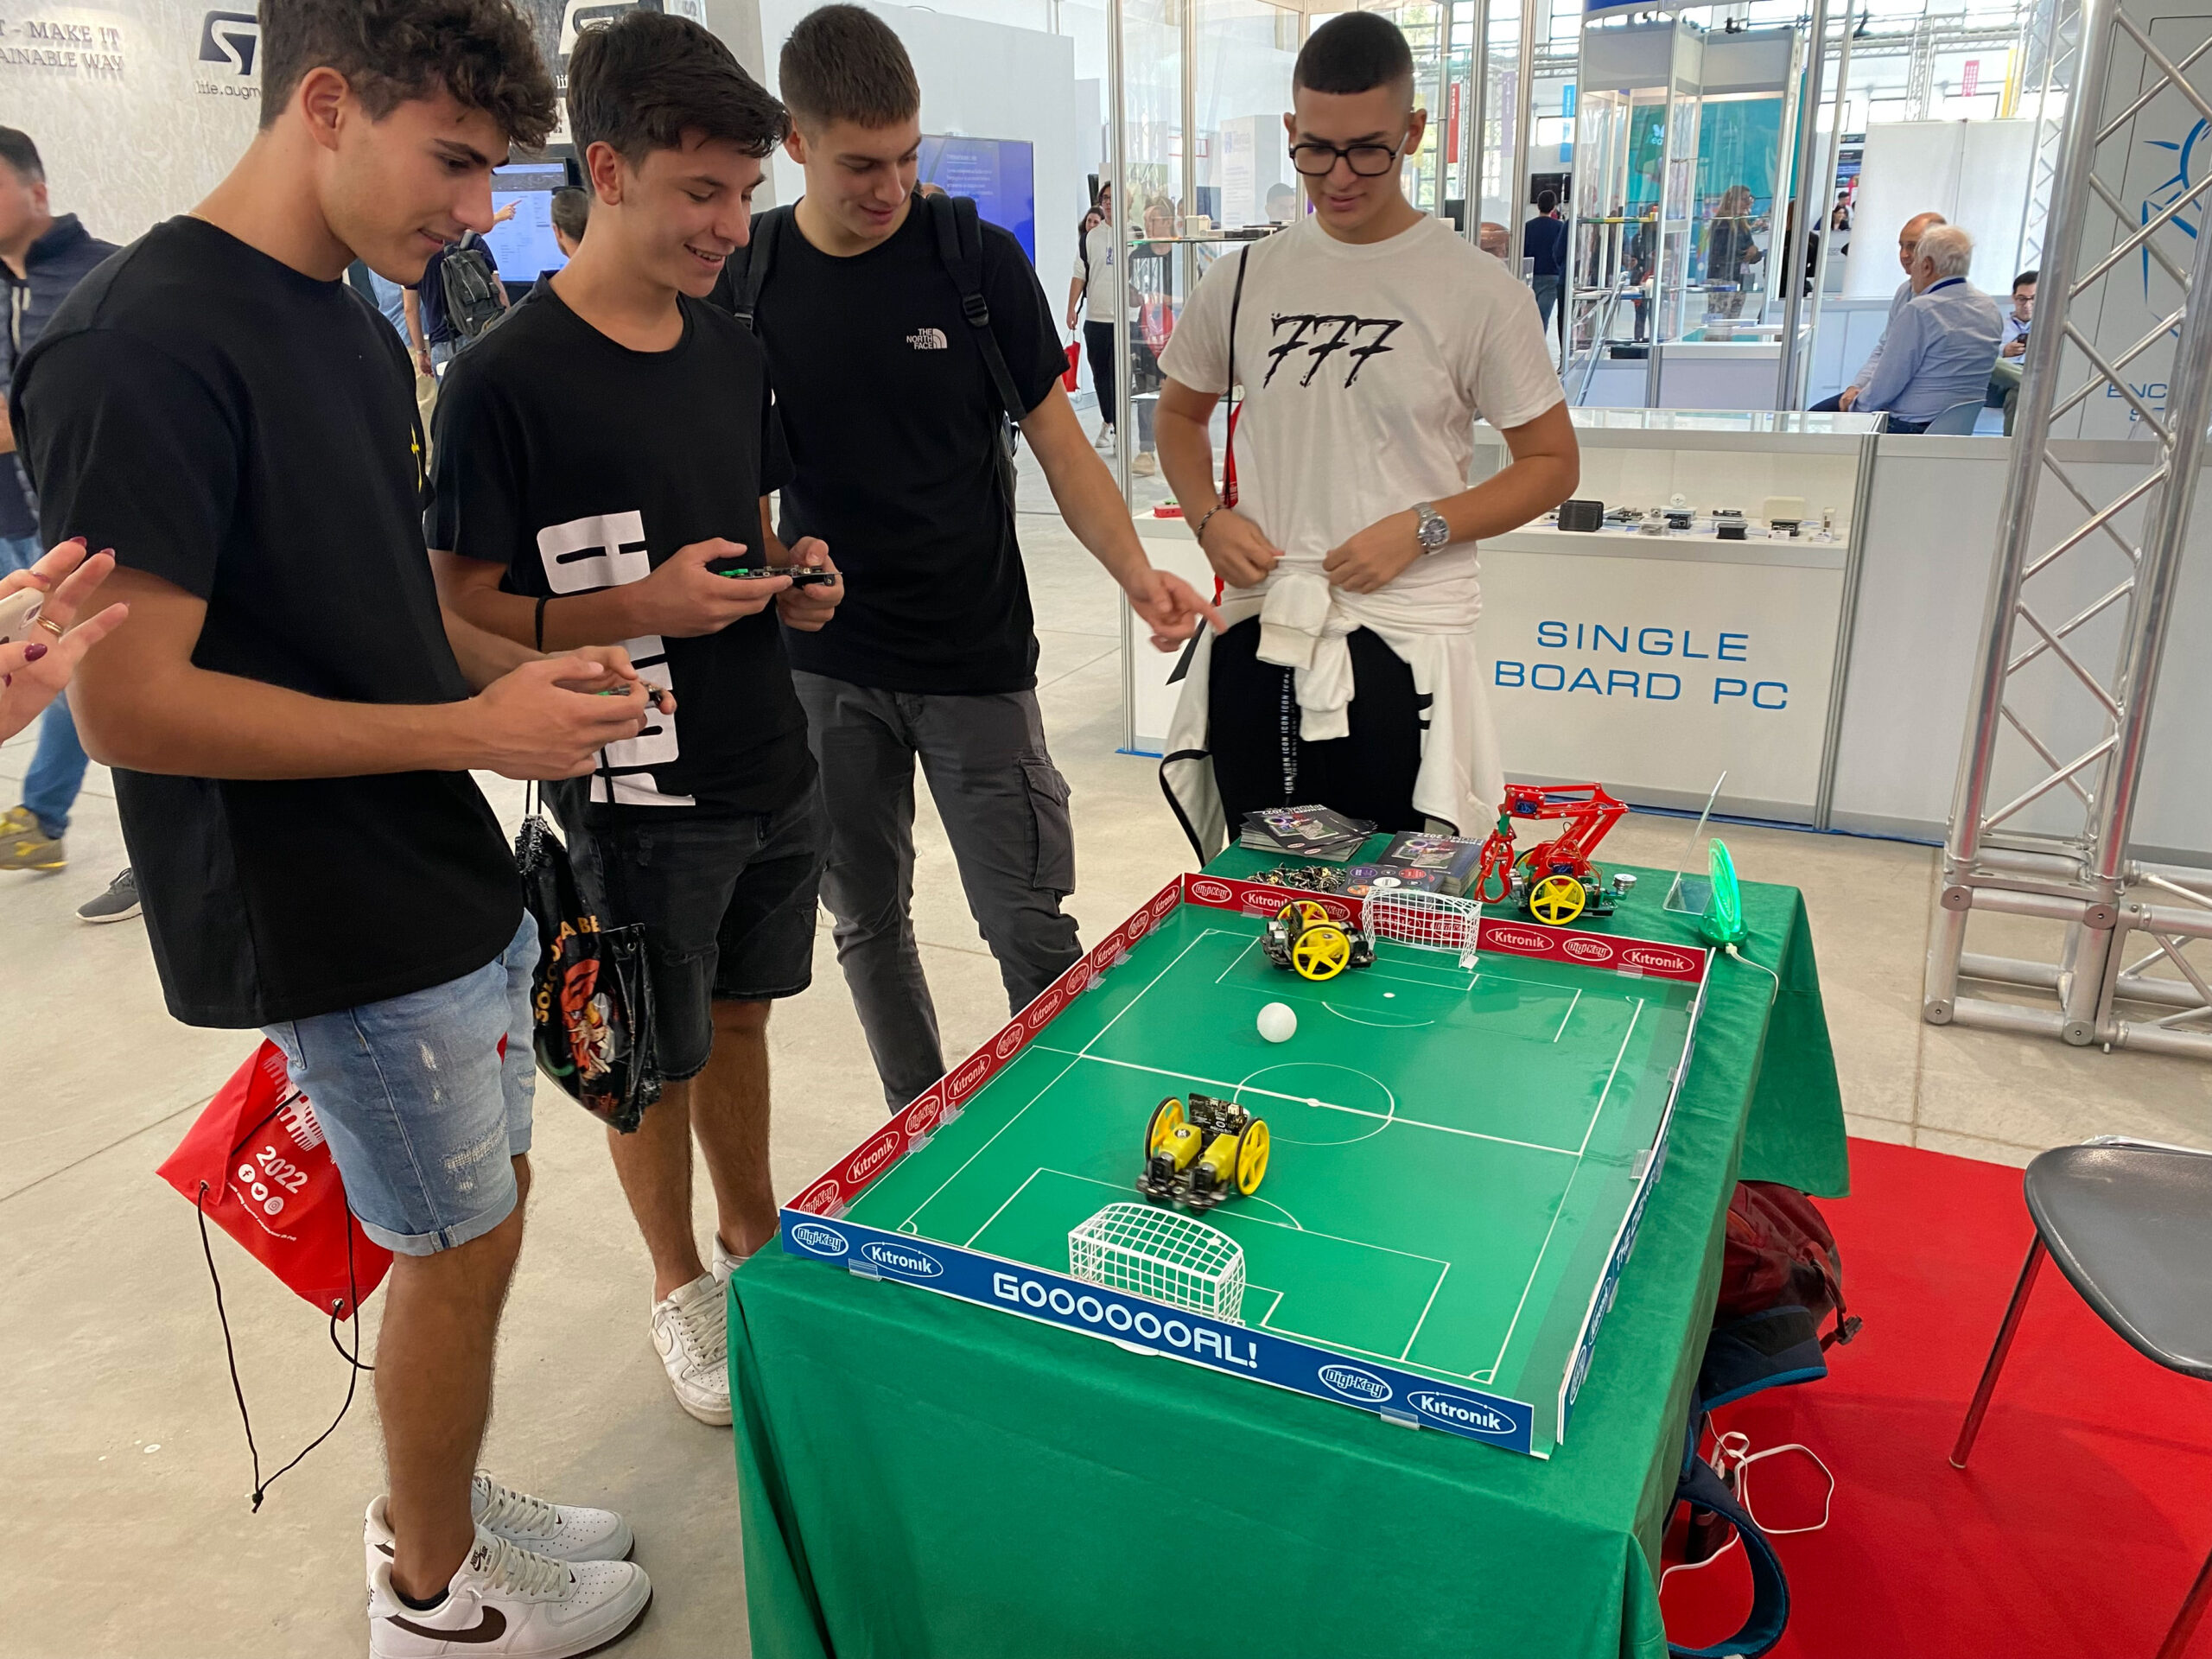 07 Kitronik Robot Soccer Demo at Maker Faire Rome